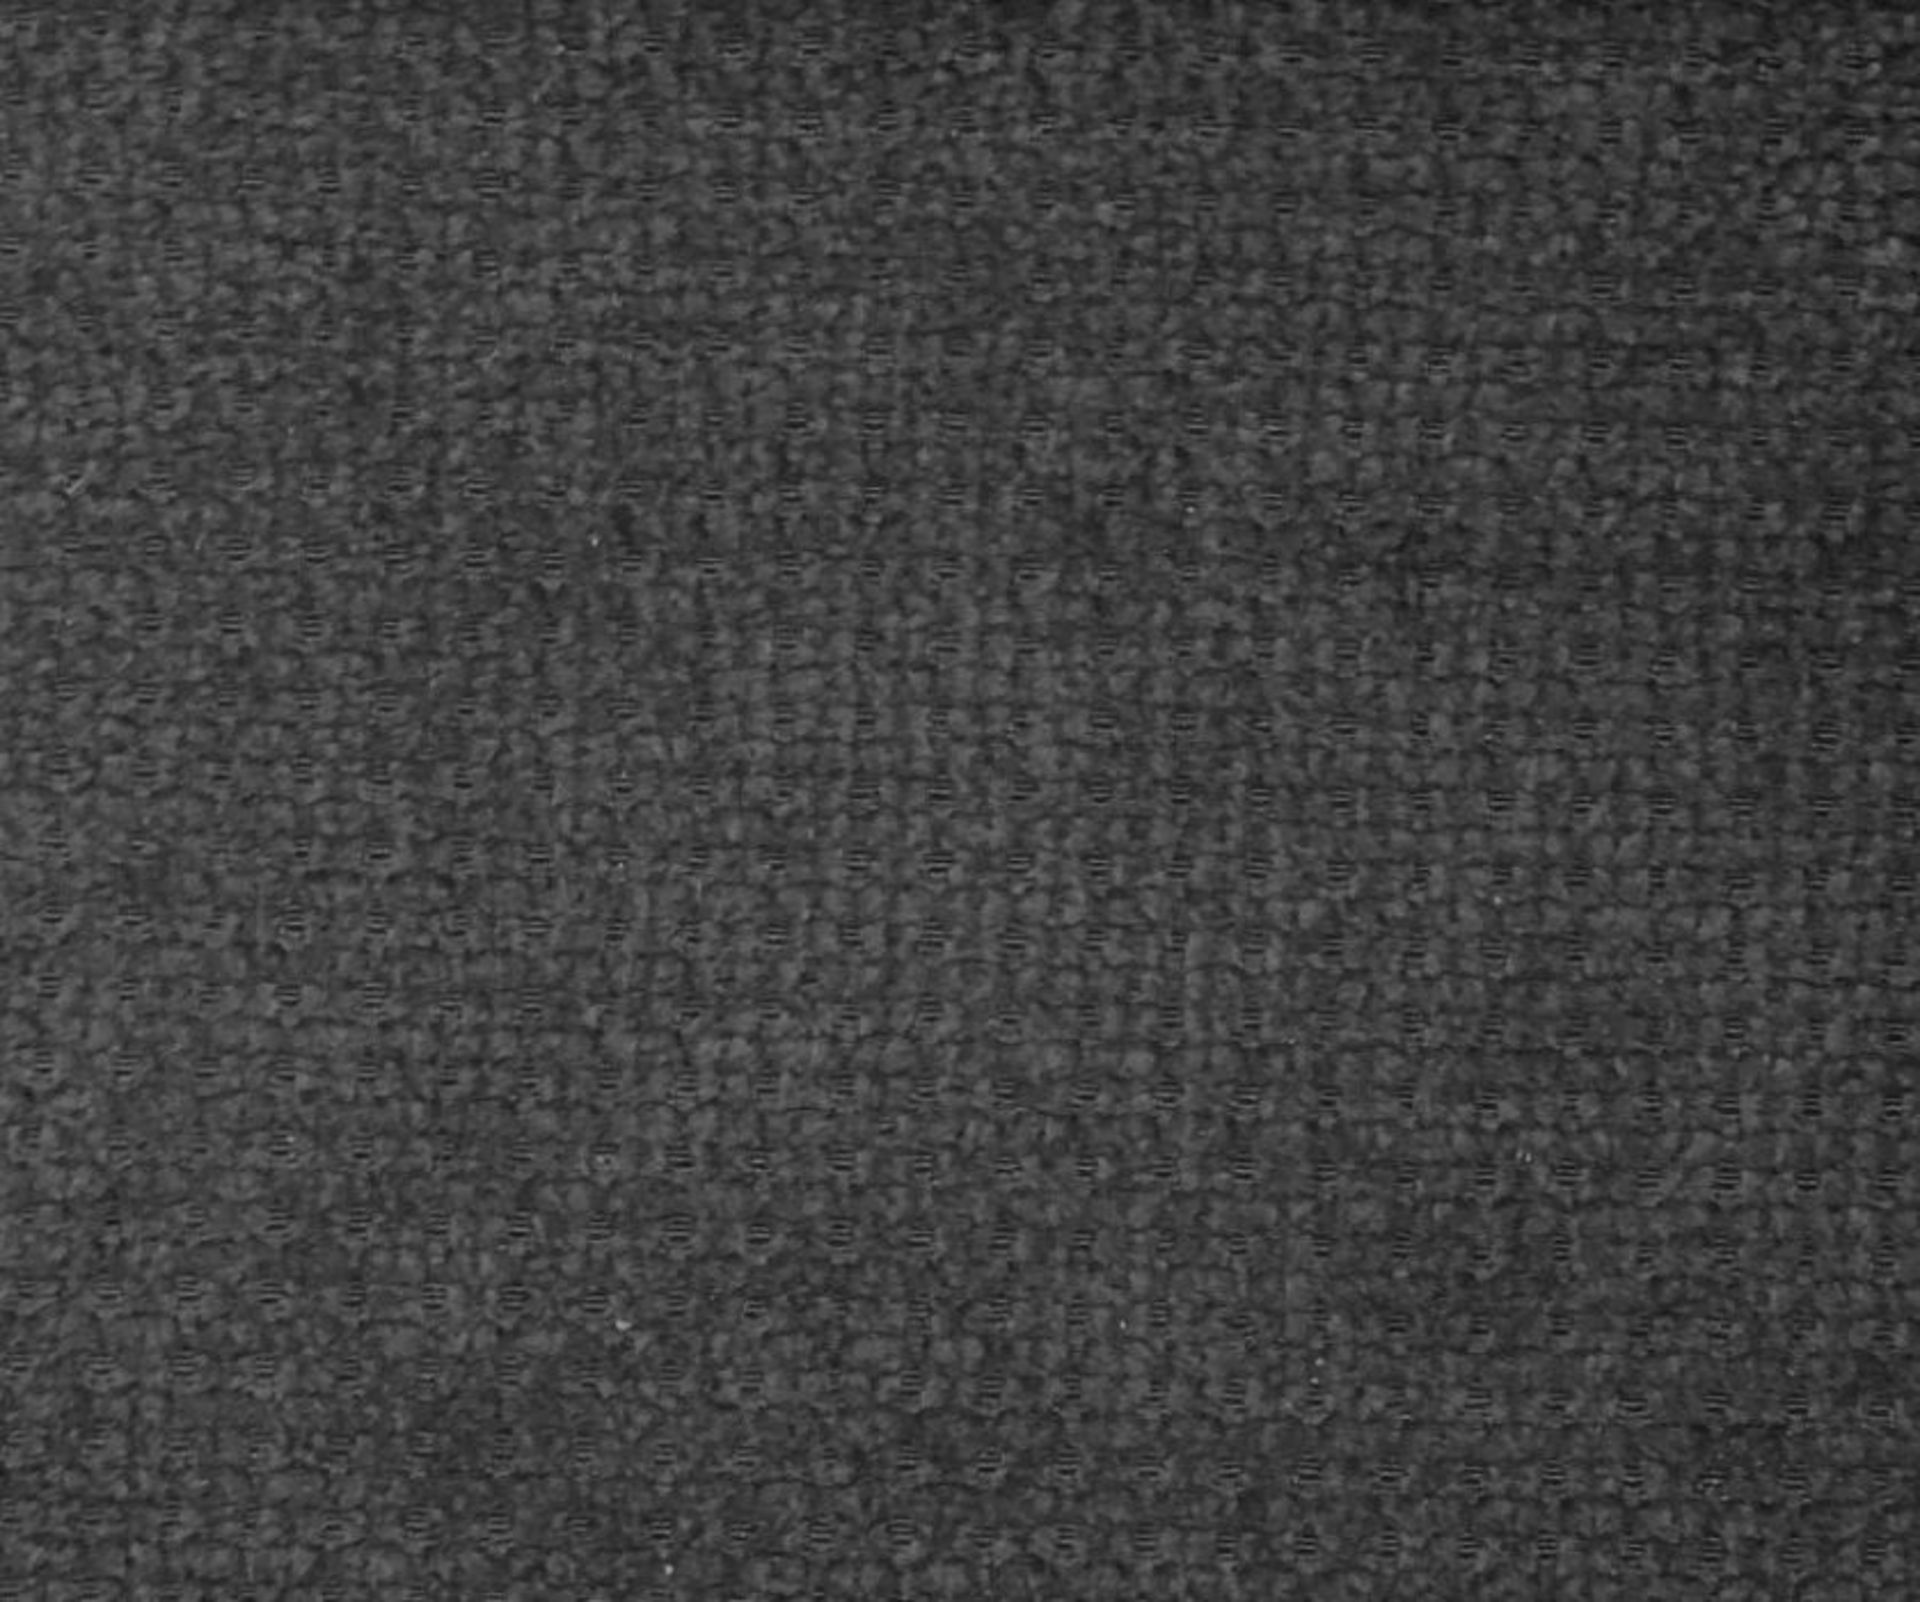 EX SHOWROOM HALLIE MARSEILLE BLACK 3 SEATER - Image 2 of 2